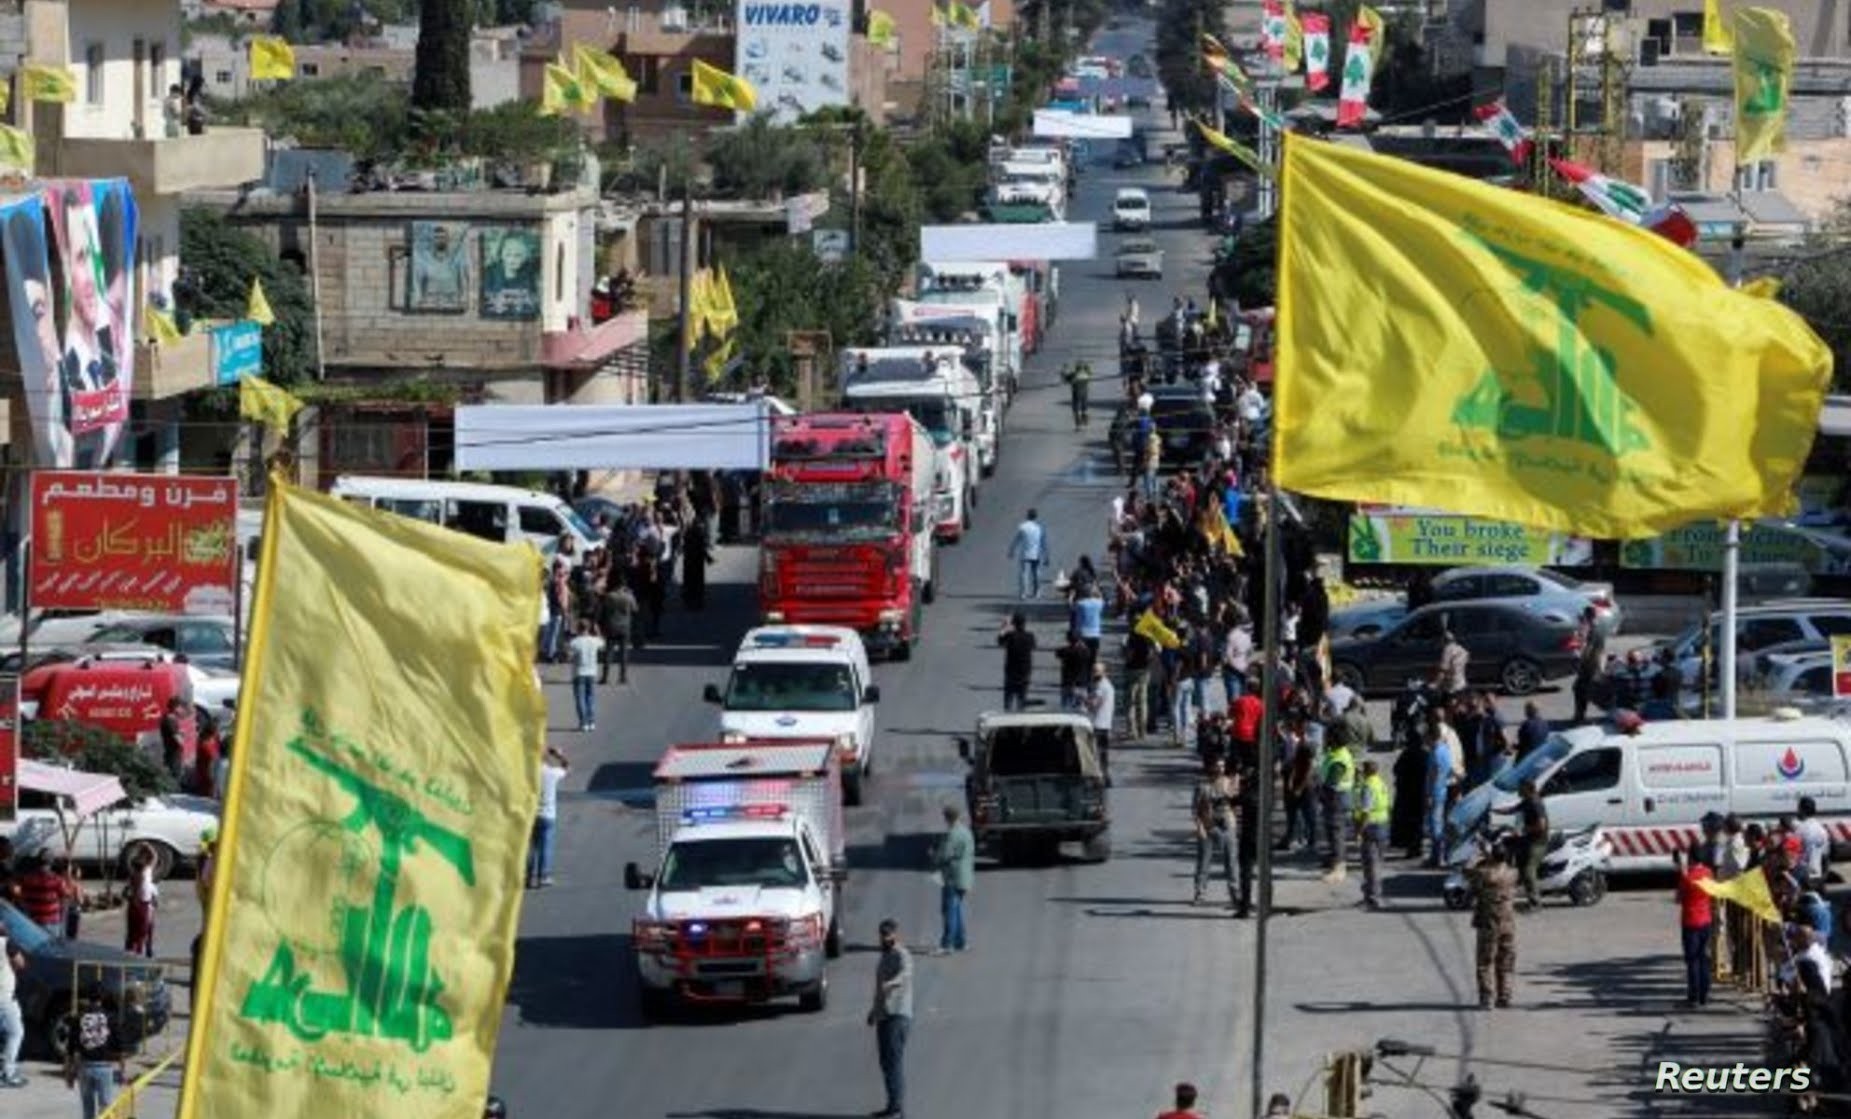 العام الماضي أرسلت إيران الوقود إلى حزب الله الذي تصنفه الولايات المتحدة وبعض الدول الغربية الأخرى منظمة إرهابية وشحن الوقود إلى سوريا ثم نقله إلى لبنان